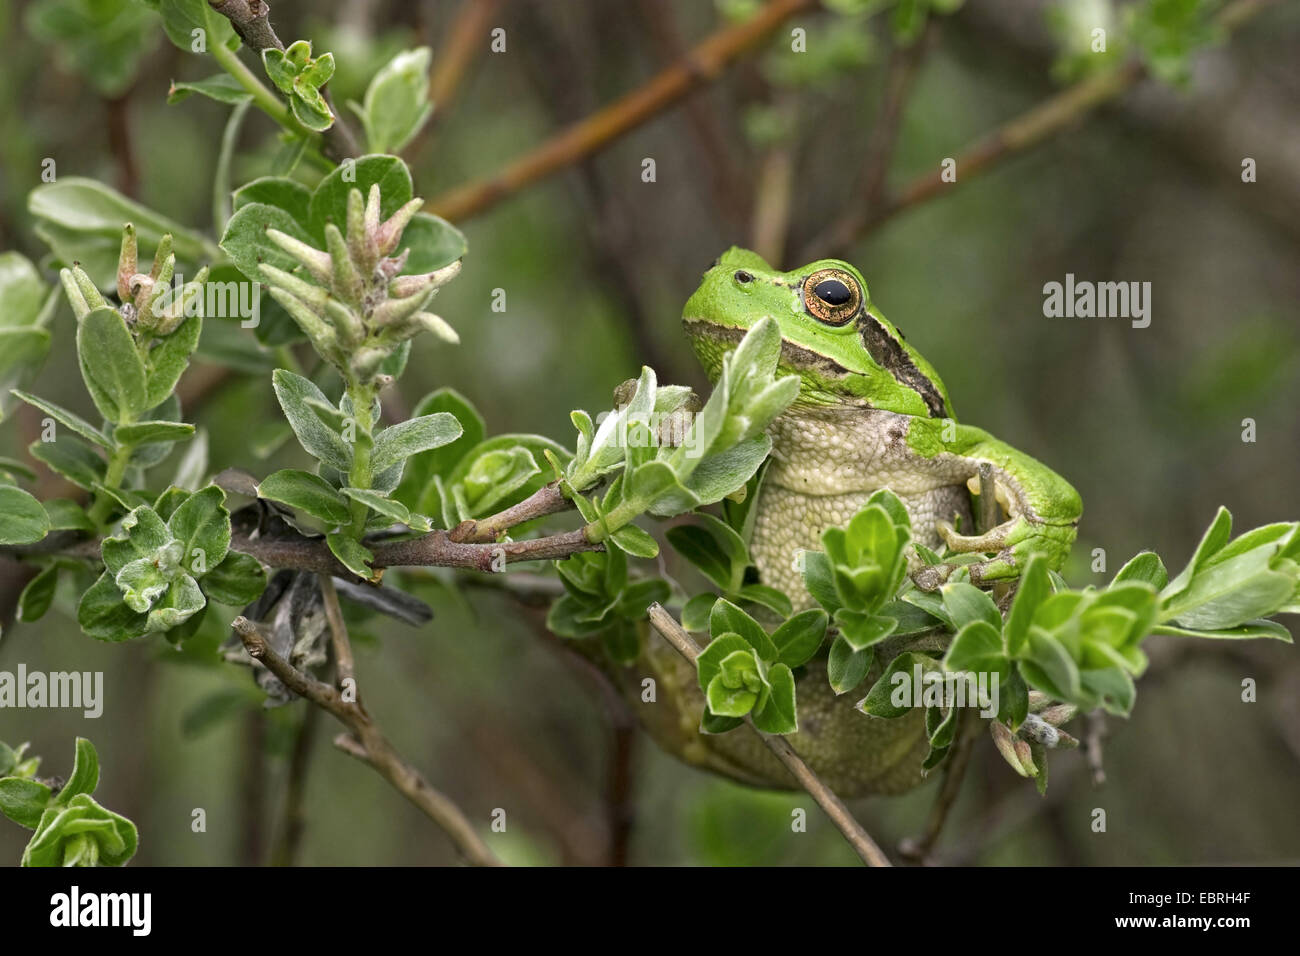 Rainette versicolore rainette commune, européenne, de l'Europe centrale rainette versicolore (Hyla arborea), assis dans un arbuste, France Banque D'Images